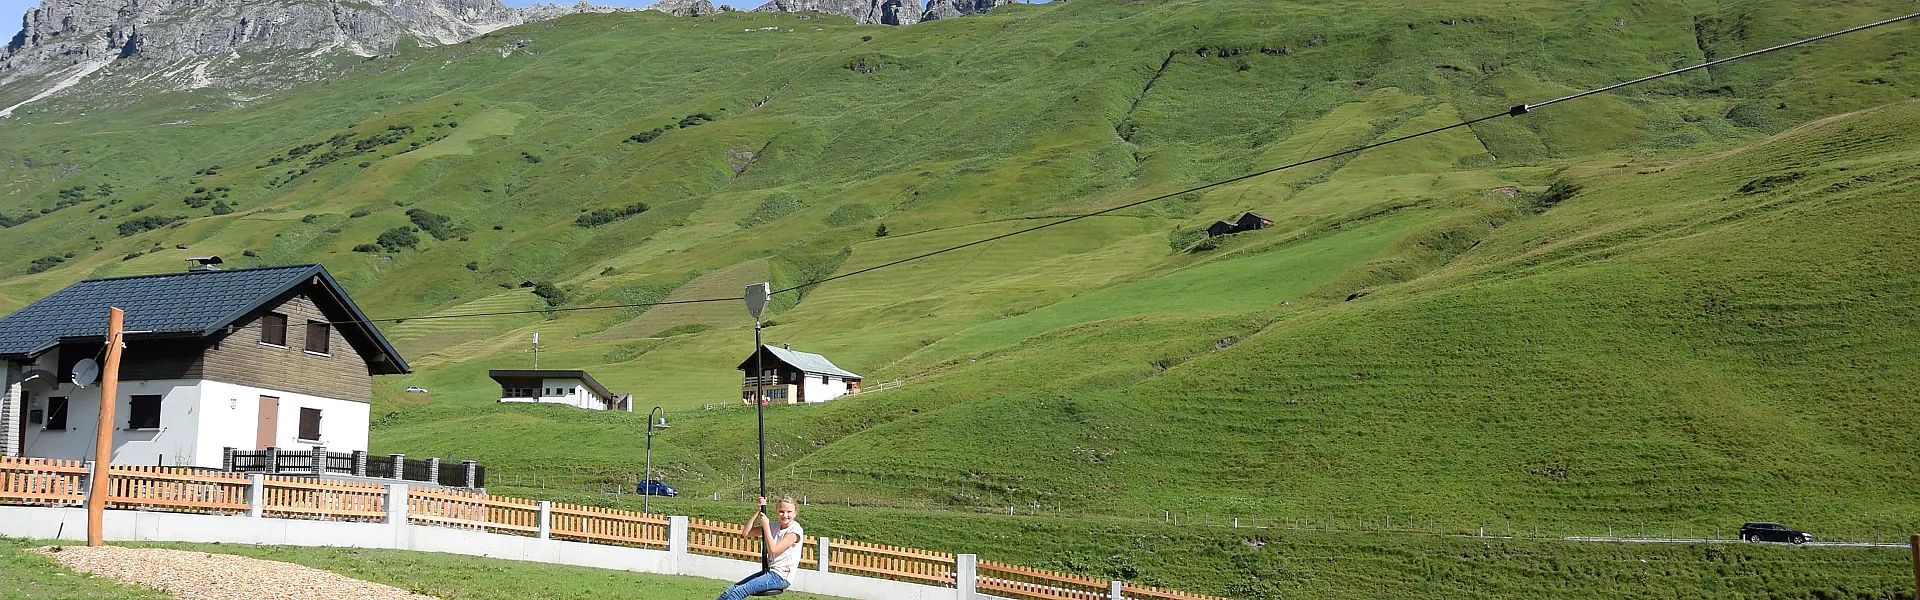 spiel-und-spass-mit-tollem-ausblick-am-spielplatz-in-arlberg